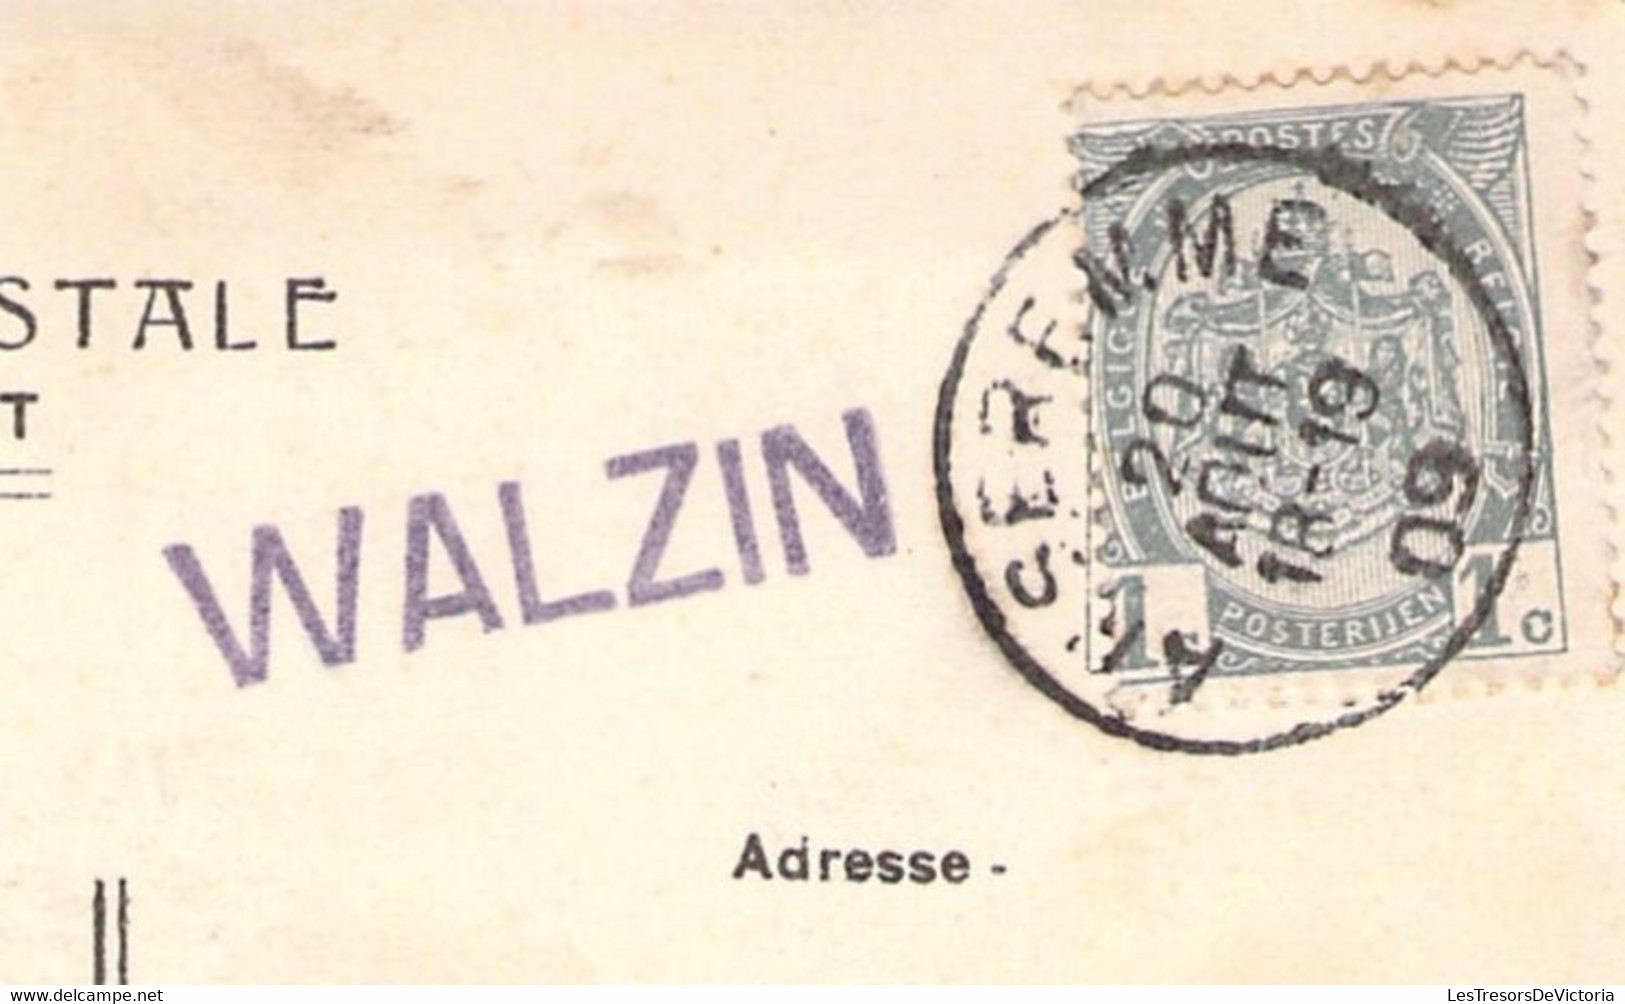 CPA Walzin Avec Griffe Linéaire Mauve WALZIN - 1909 - Griffes Linéaires